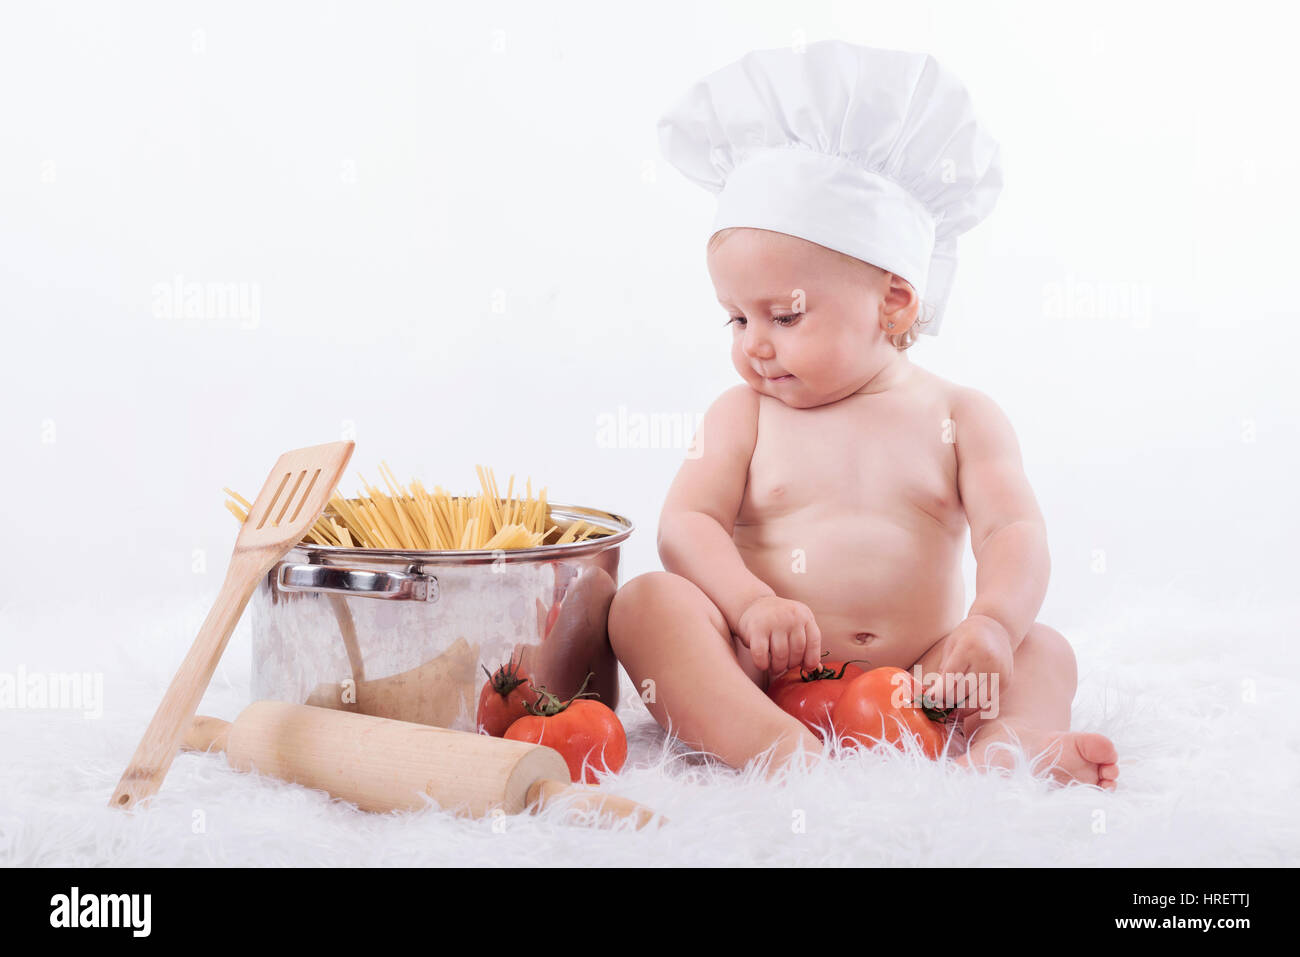 Bebé en el traje de cocinero Foto de stock 501192943